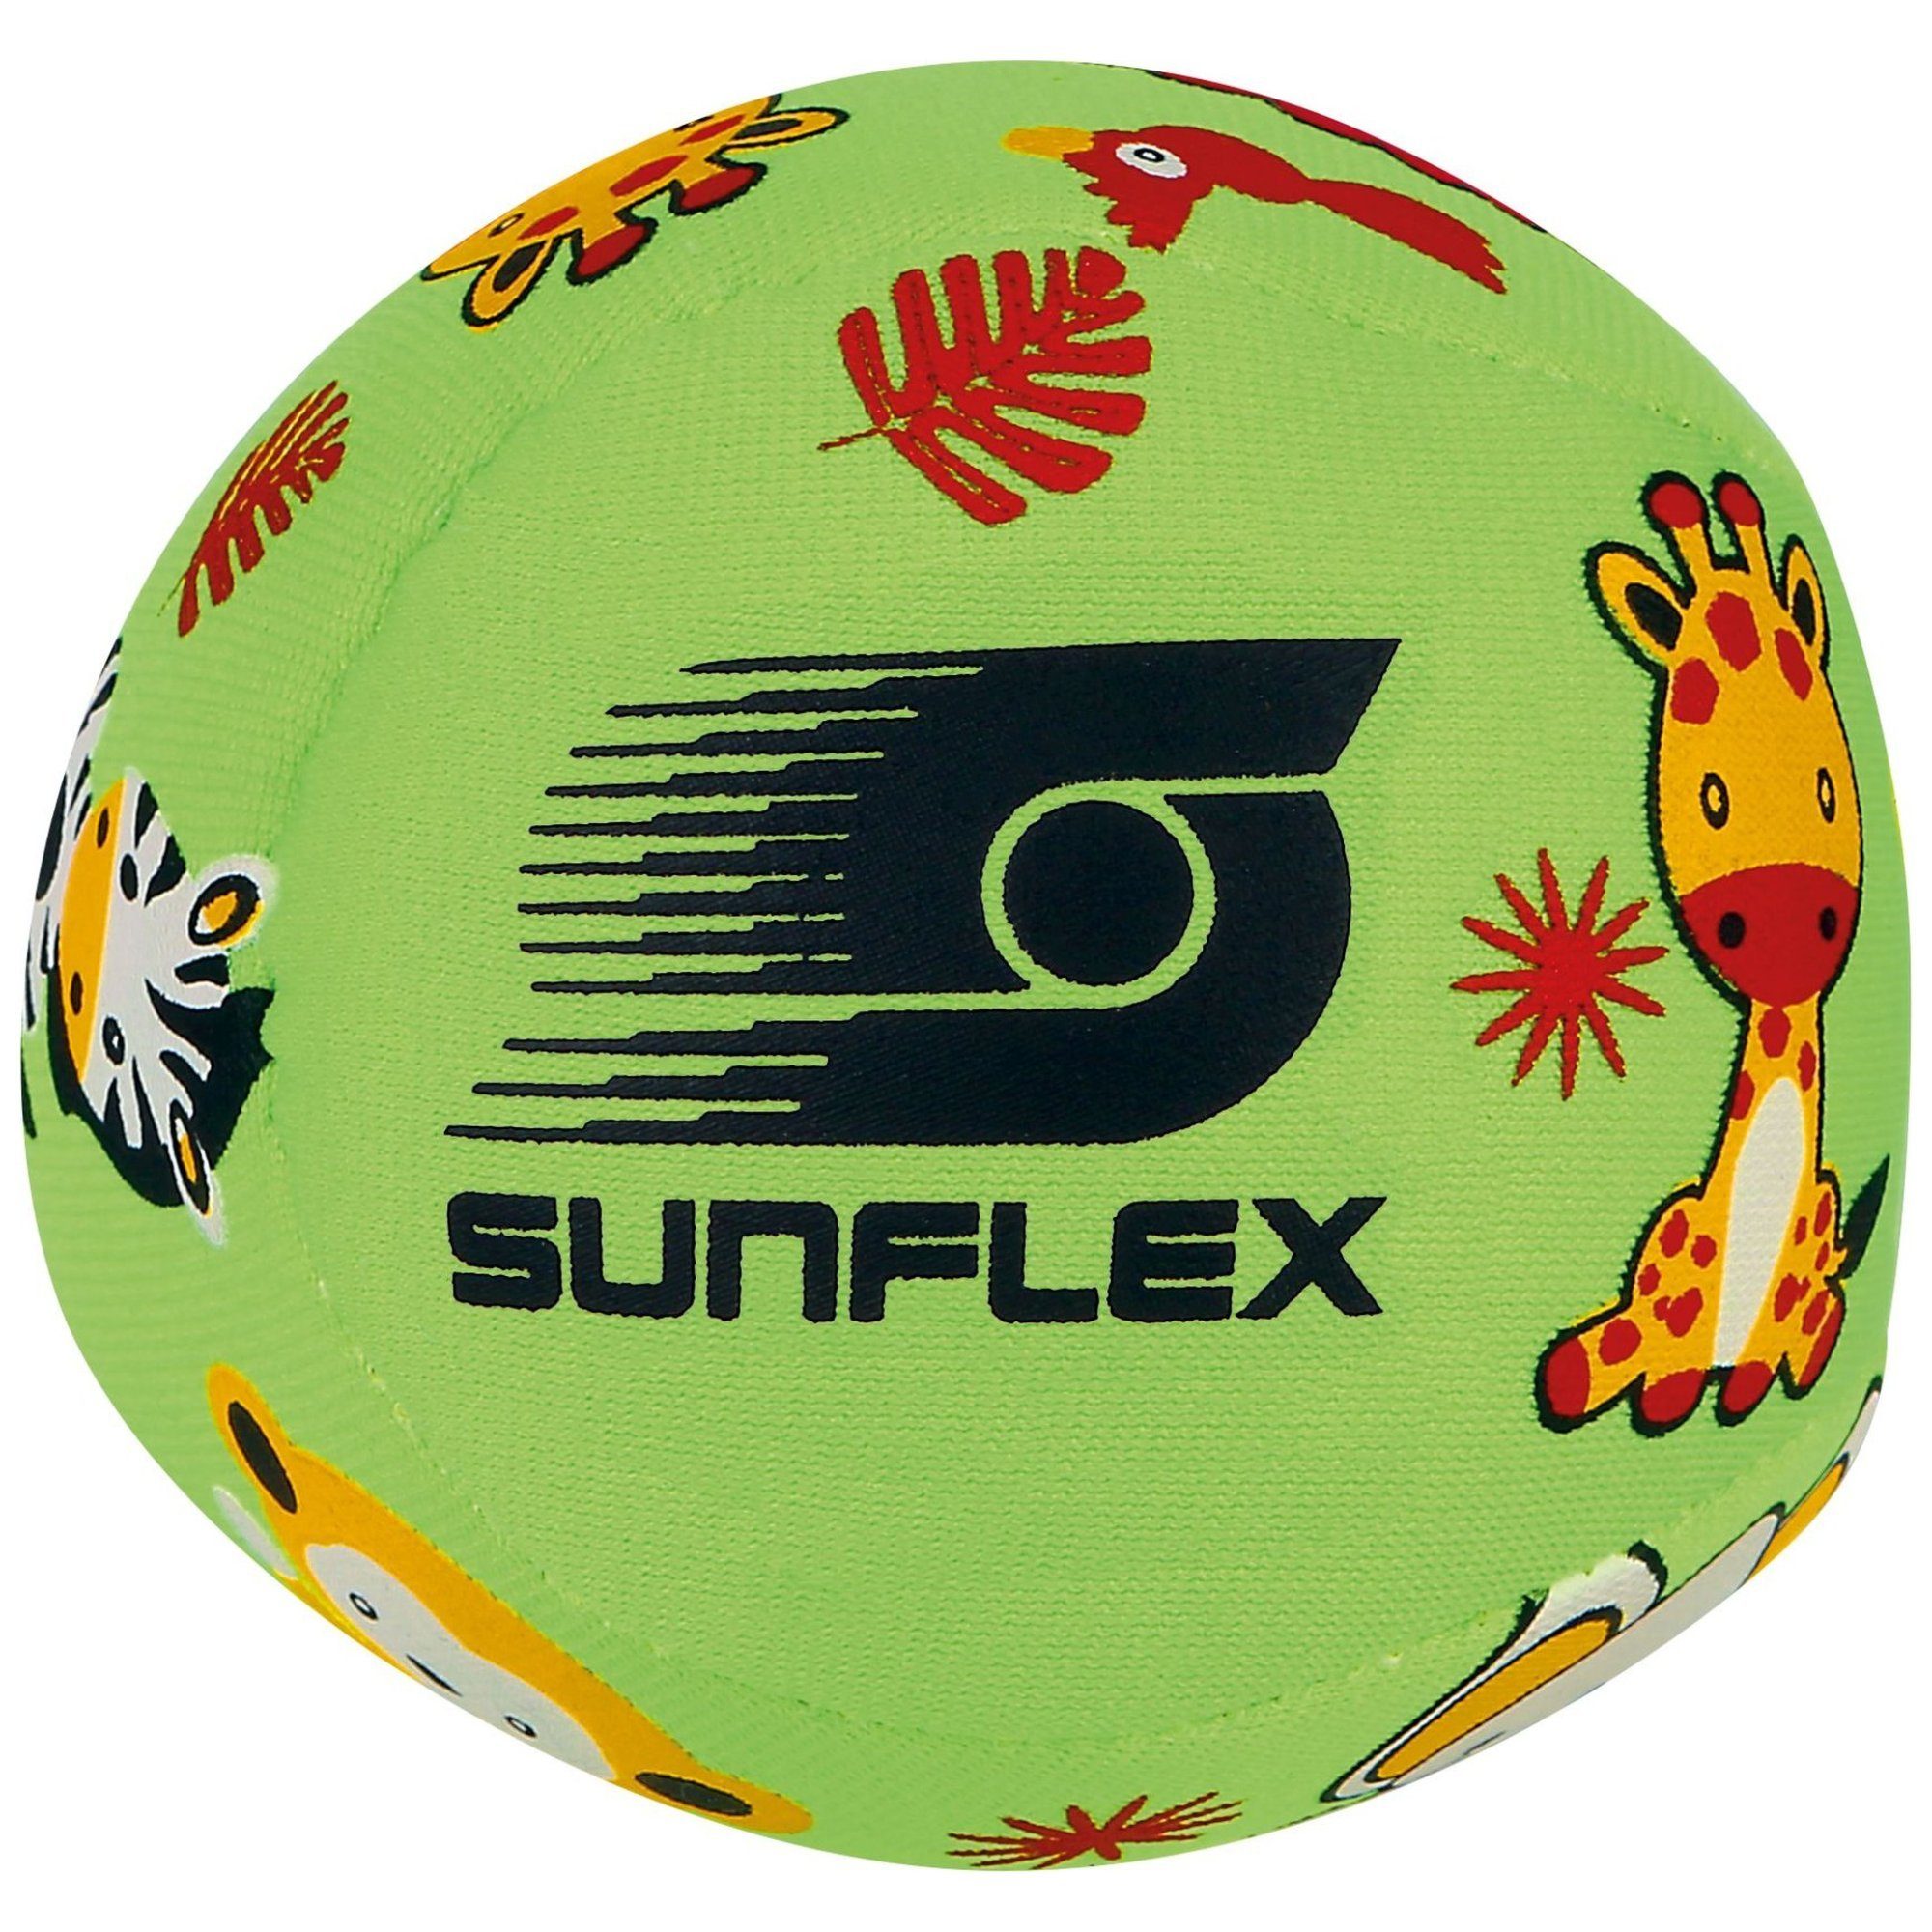 Sunflex Softball sunflex Small Softball Youngster grün